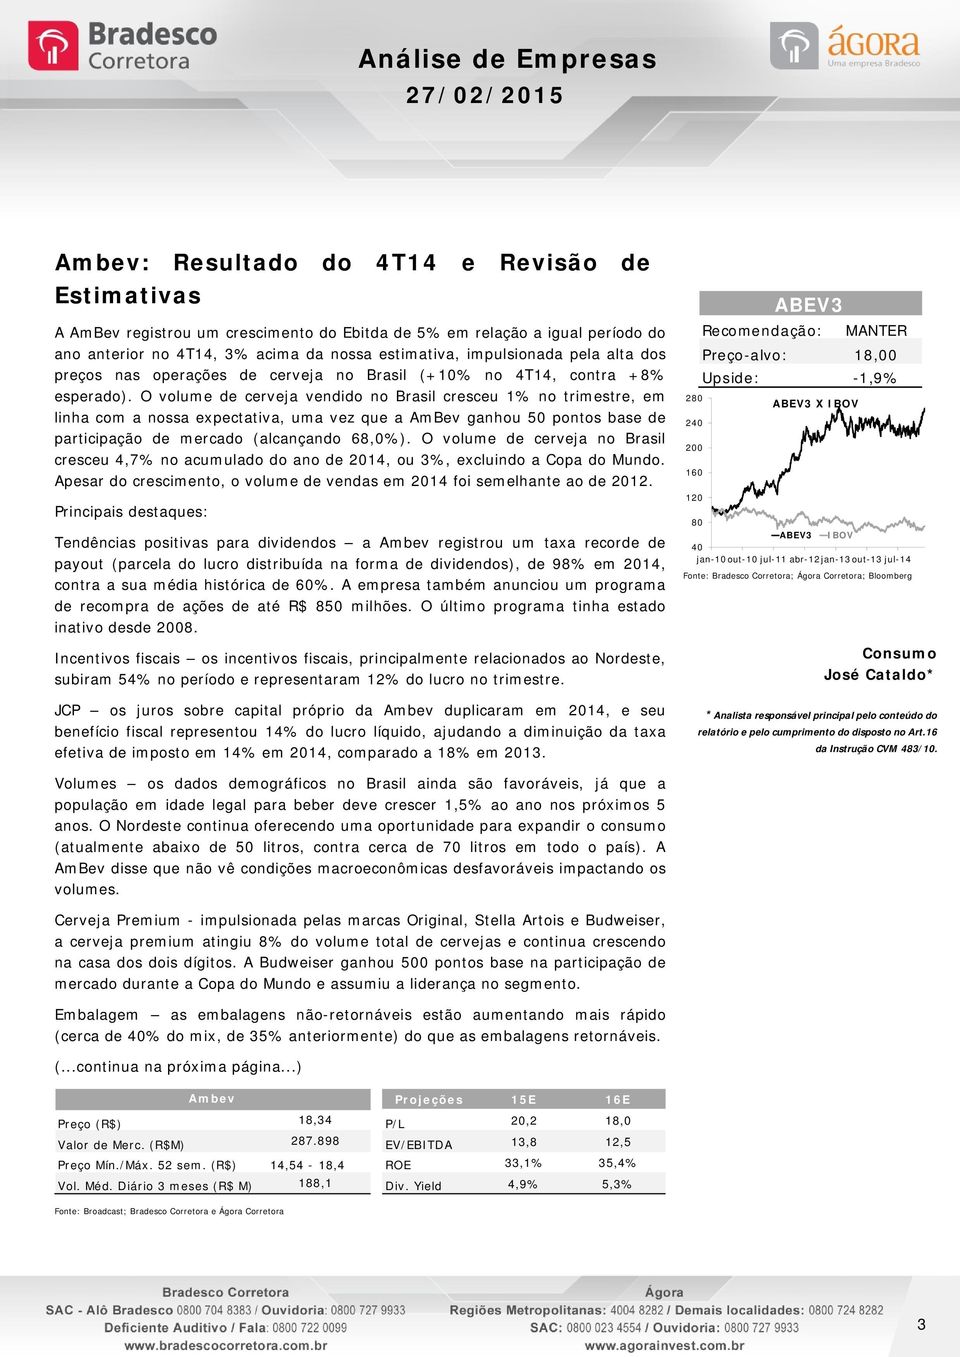 O volume de cerveja vendido no Brasil cresceu 1% no trimestre, em linha com a nossa expectativa, uma vez que a AmBev ganhou 50 pontos base de participação de mercado (alcançando 68,0%).